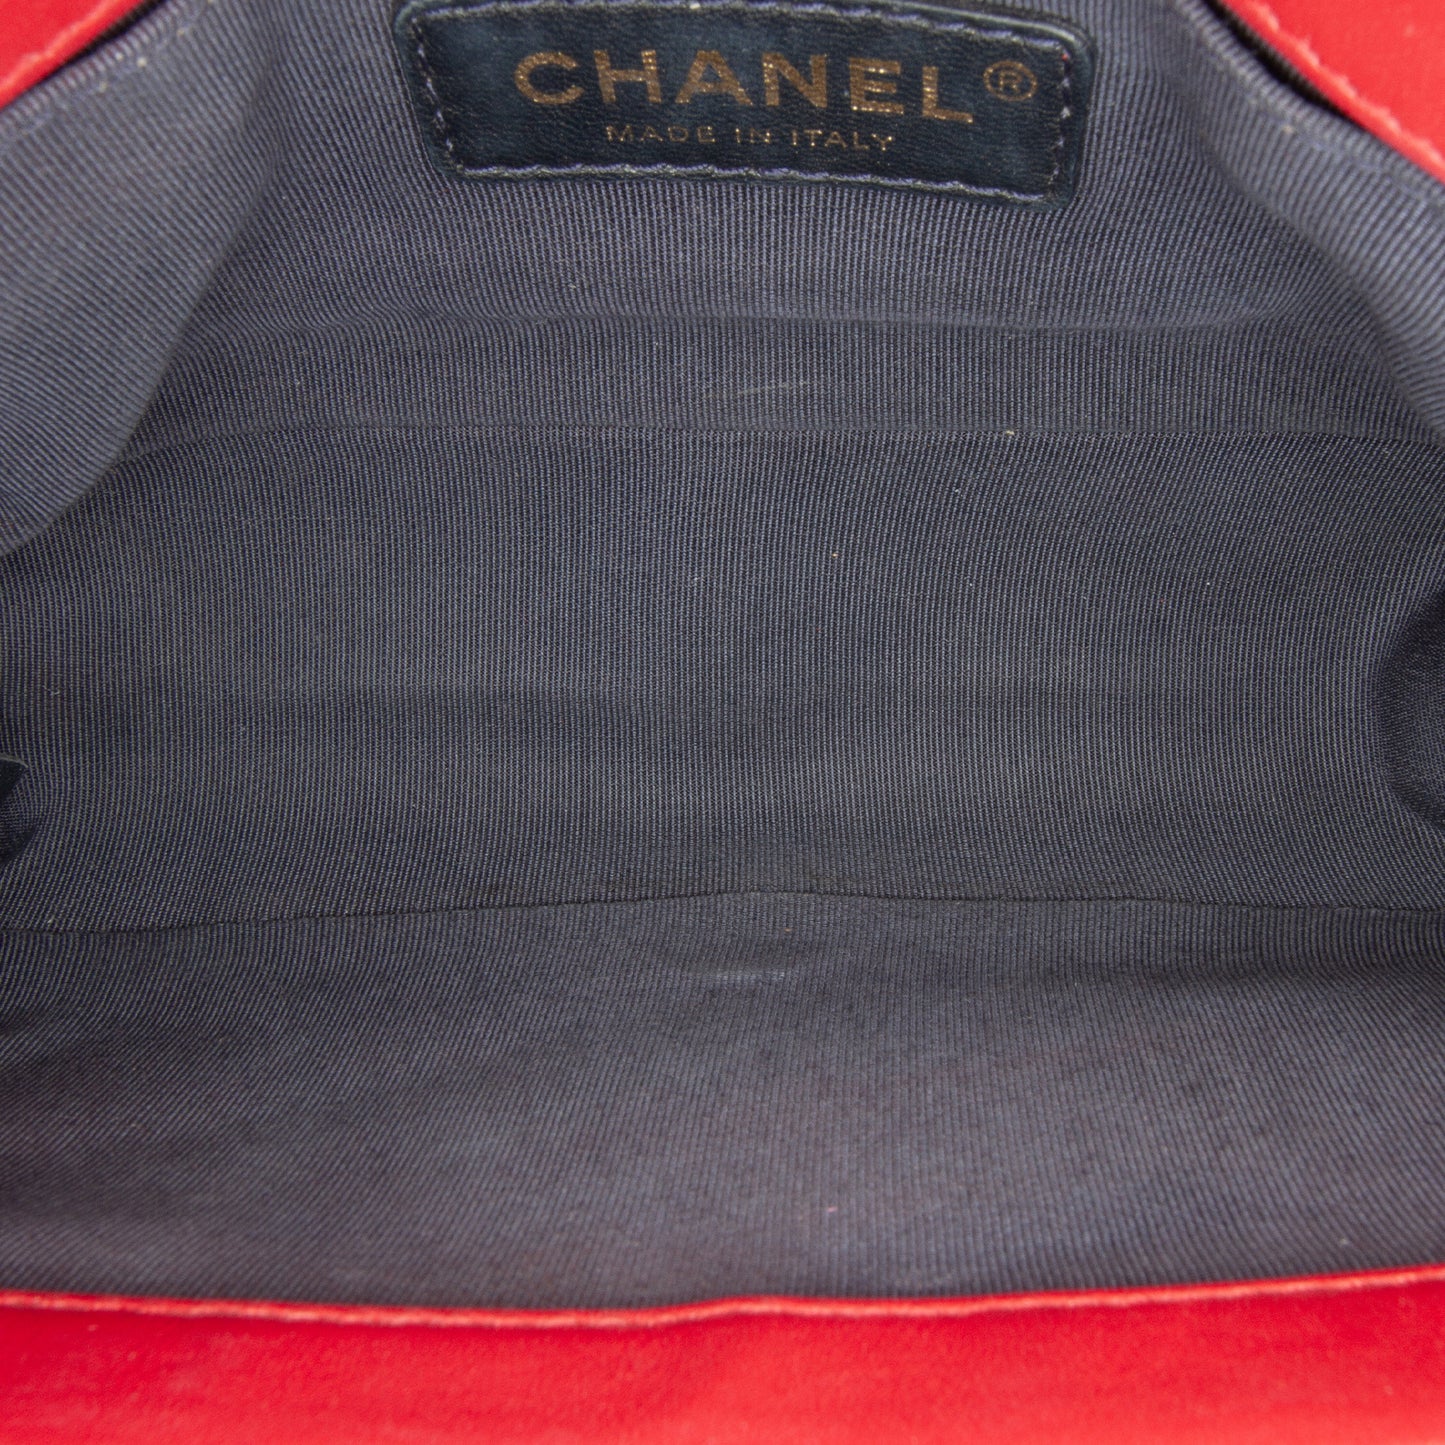 Chanel Chevron Boy Flap Bag - Small Size